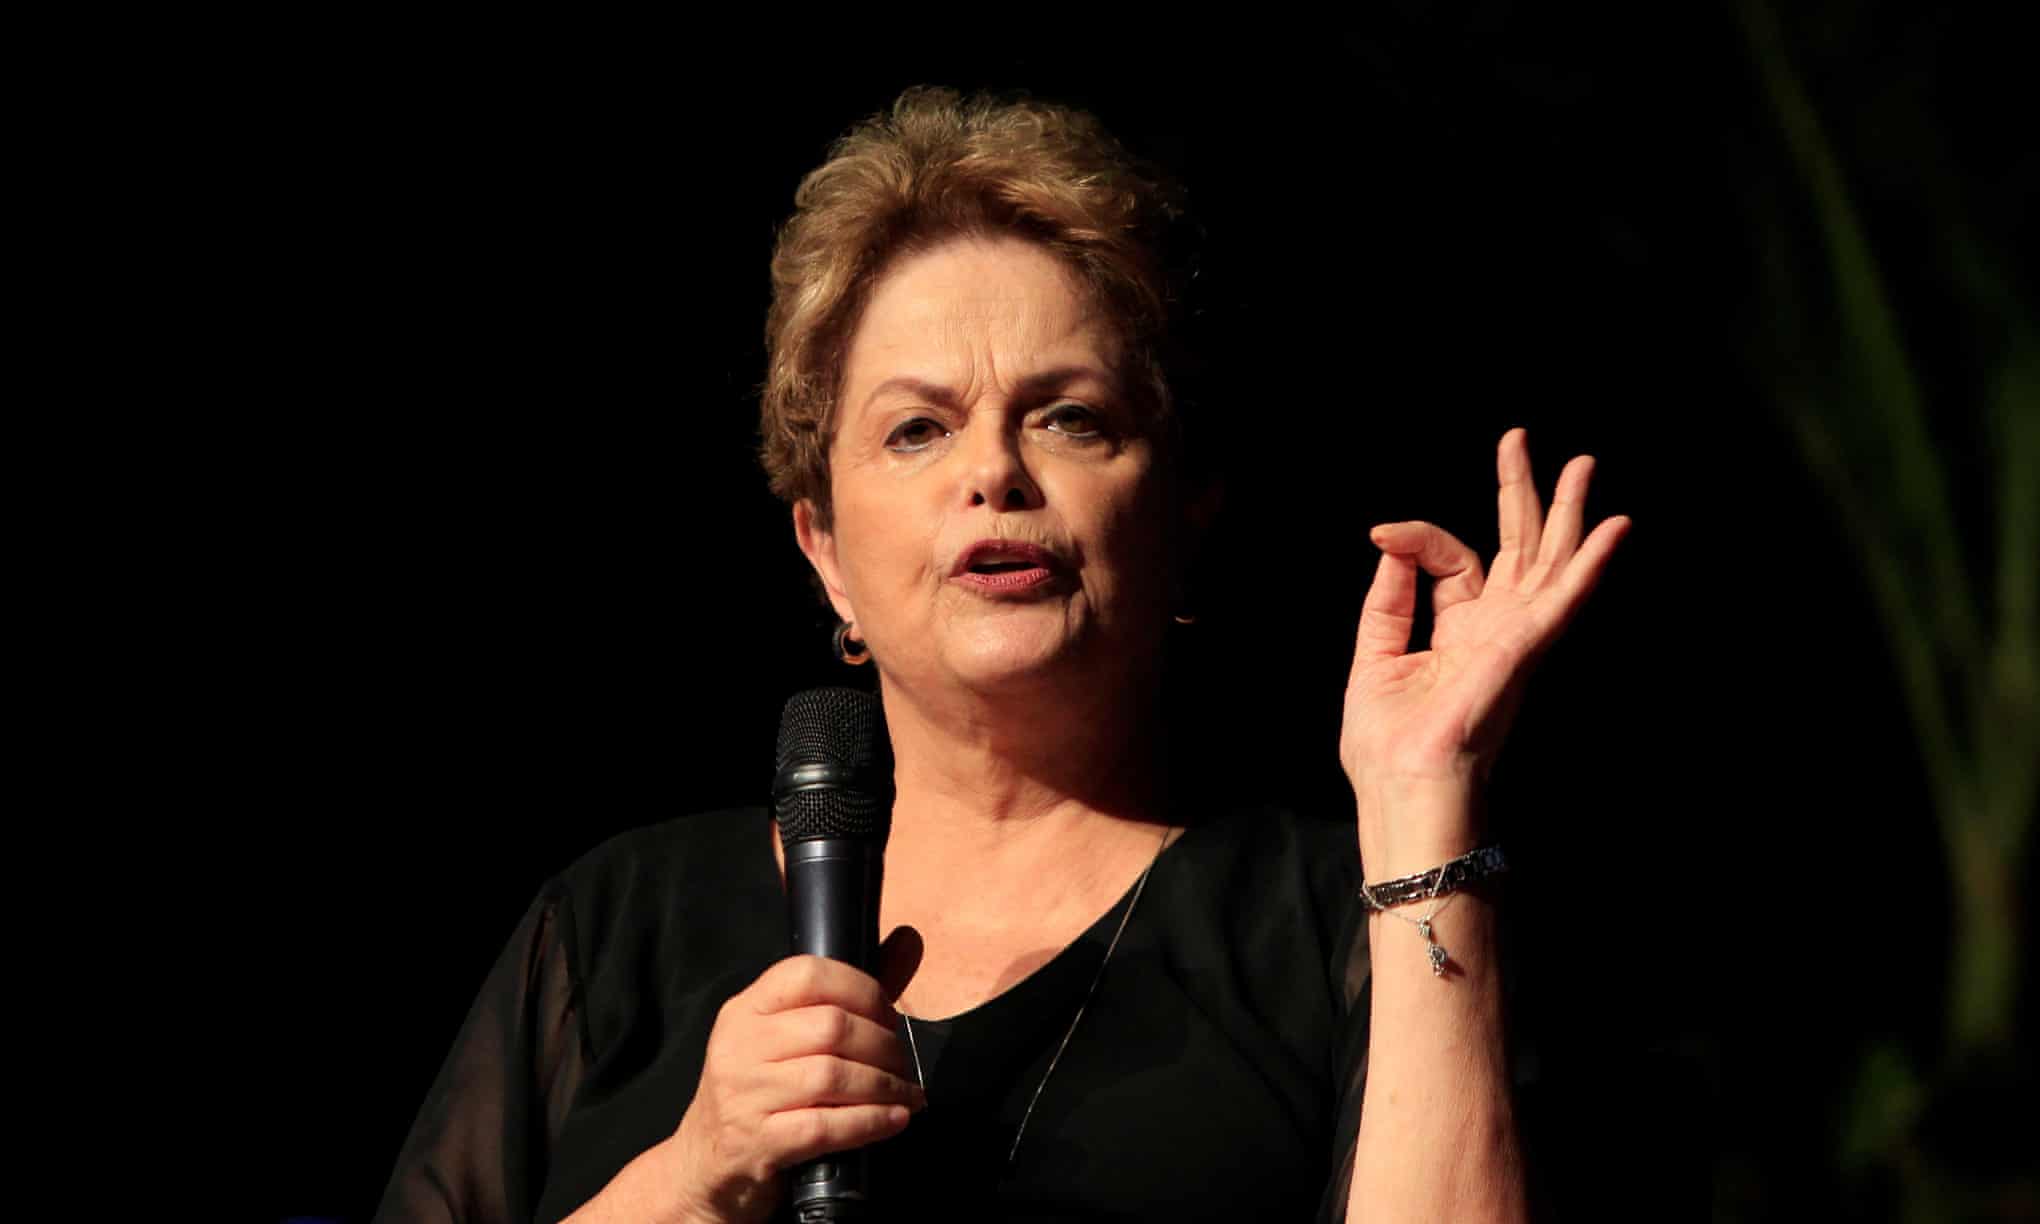 La respuesta ‘genocida’ de Bolsonaro causó la catástrofe brasileña, dice Dilma Rousseff